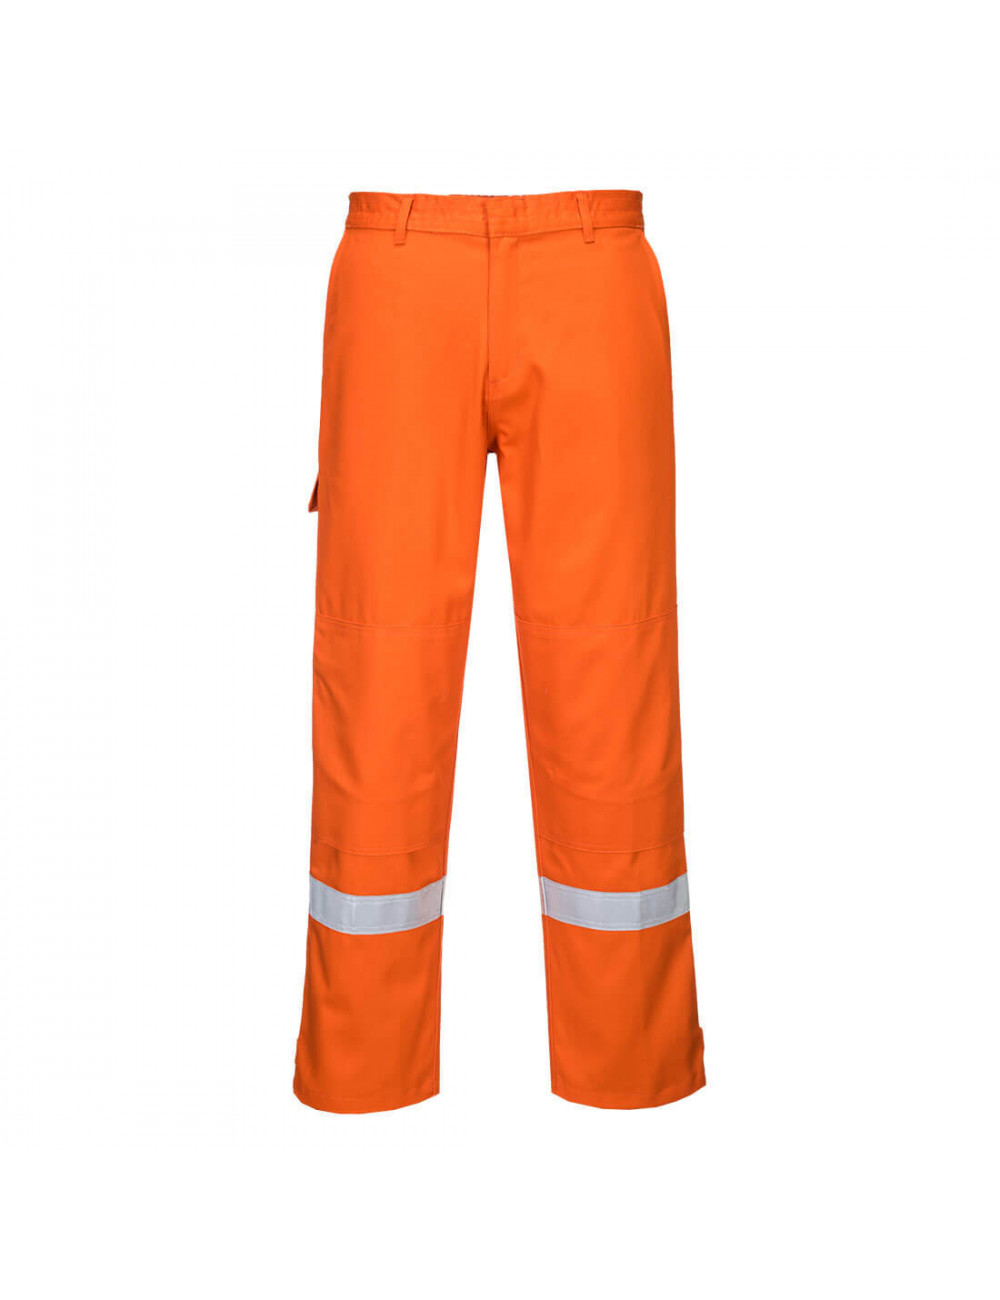 Spodnie bizflame plus pomarańczowy Portwest